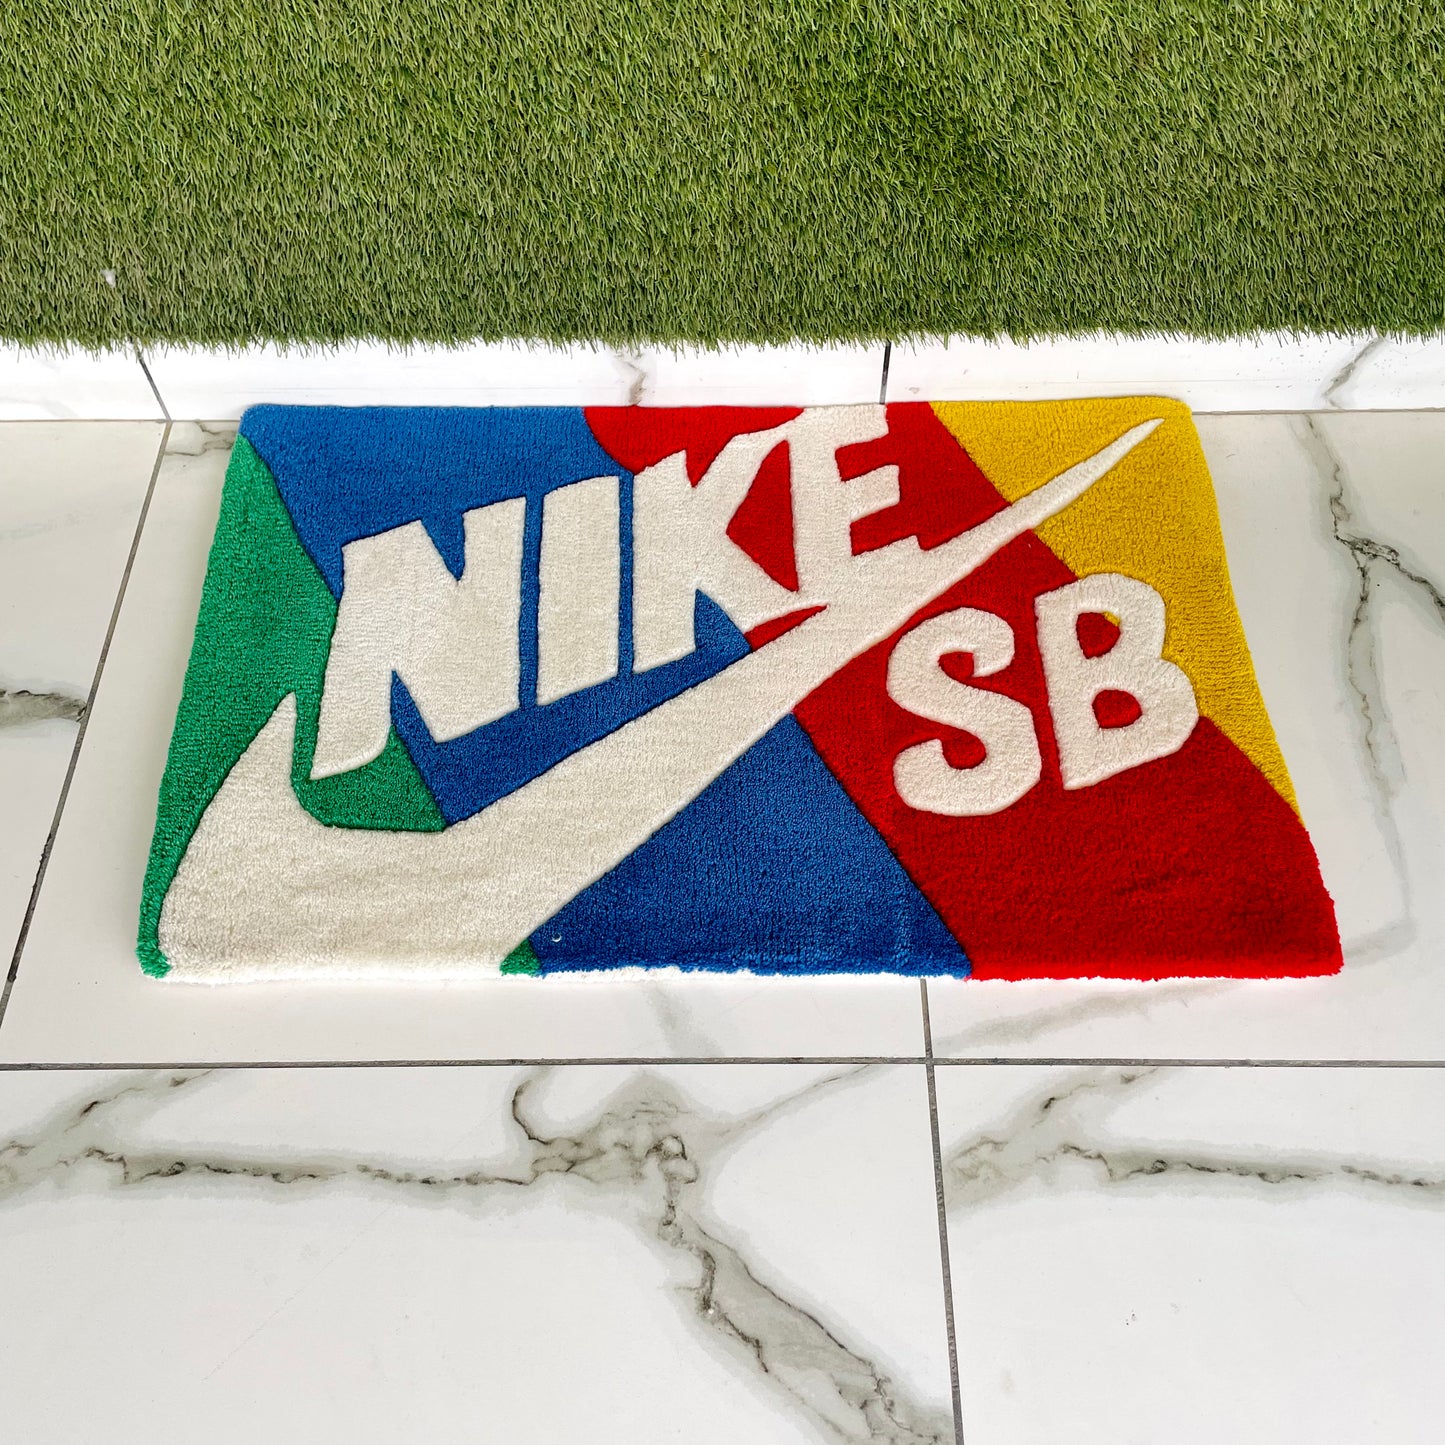 Nike SB Box Top Hand-Tufted Rug low angle view